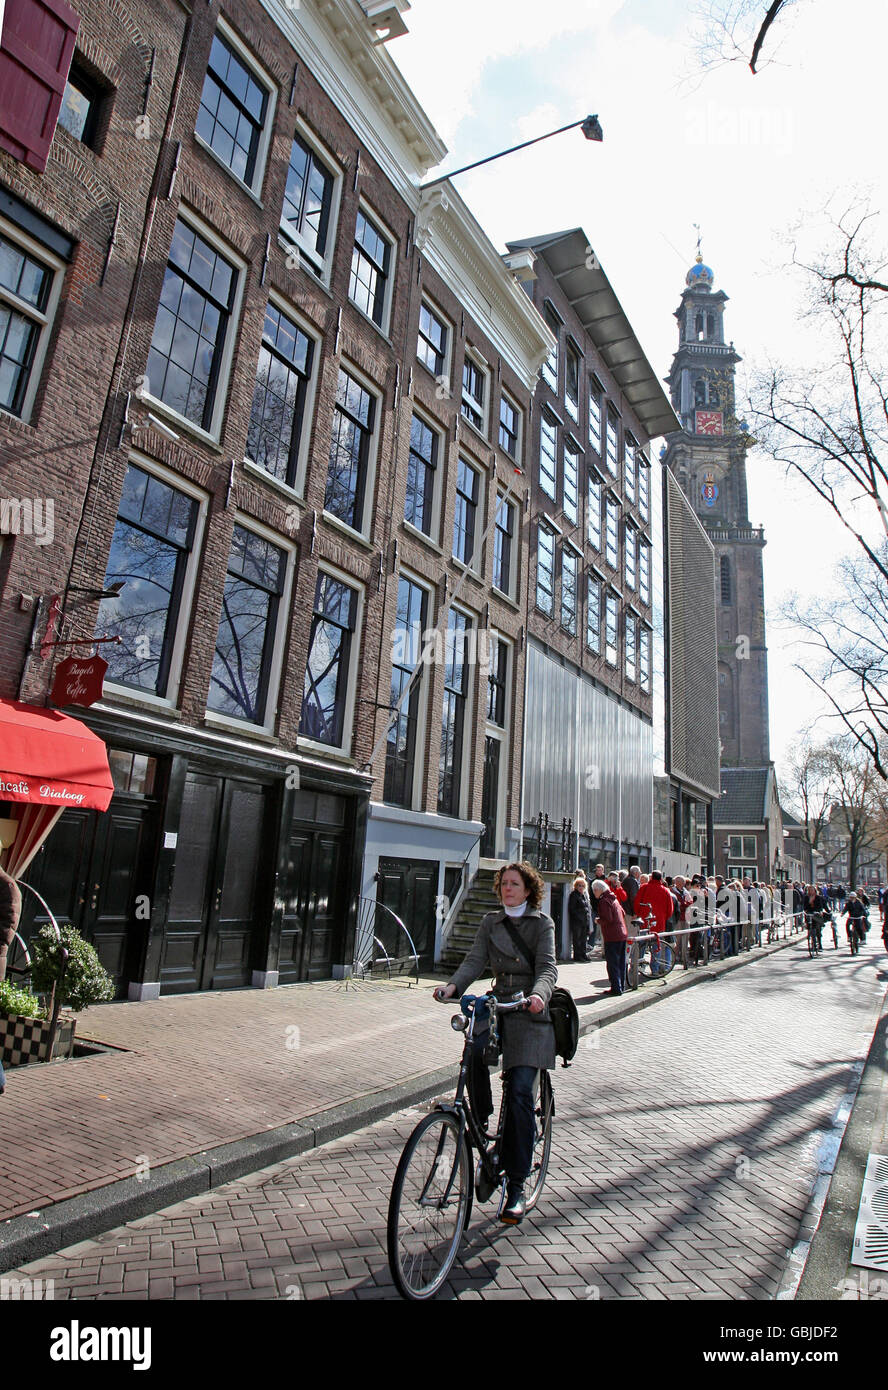 Ein Blick auf das Anne Frank Haus und das Museum im Zentrum von Amsterdam, Holland. DRÜCKEN SIE VERBANDSFOTO. Bild Datum Samstag 28 2009. März. Der Bildnachweis sollte Chris Radburn/PA Wire lauten. Stockfoto